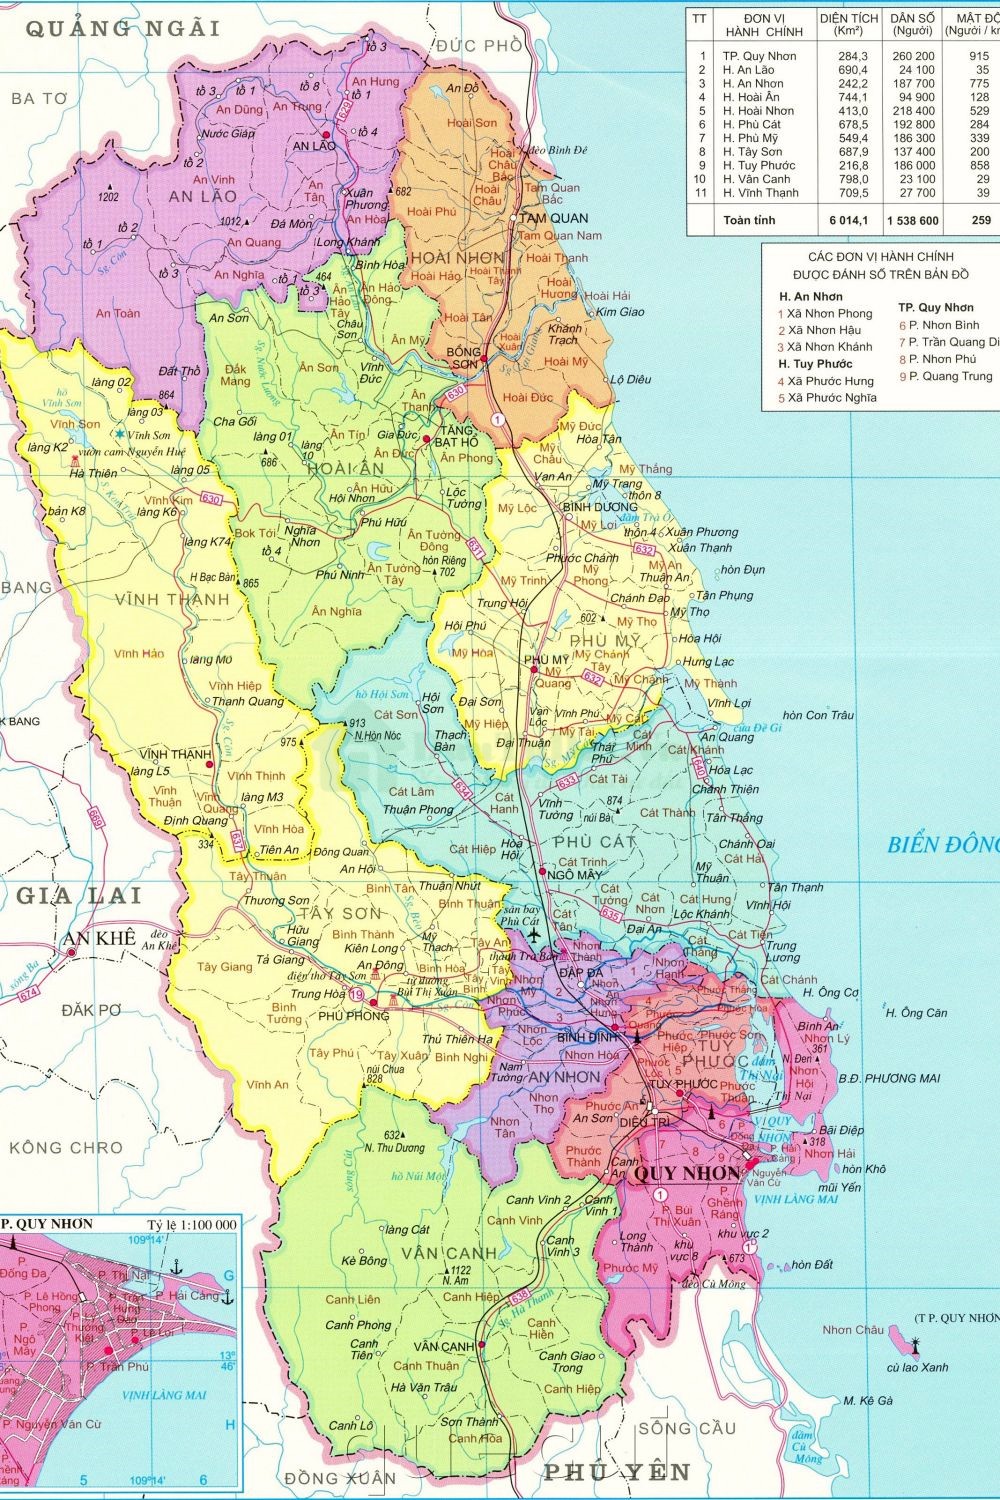 Bản đồ Bình Định 2022 sẽ giúp bạn có thêm thông tin về địa danh, các lễ hội truyền thống, cũng như các địa điểm du lịch nổi bật như Quy Nhơn, Tuy Phước, An Nhơn, hay Phú Mỡ.